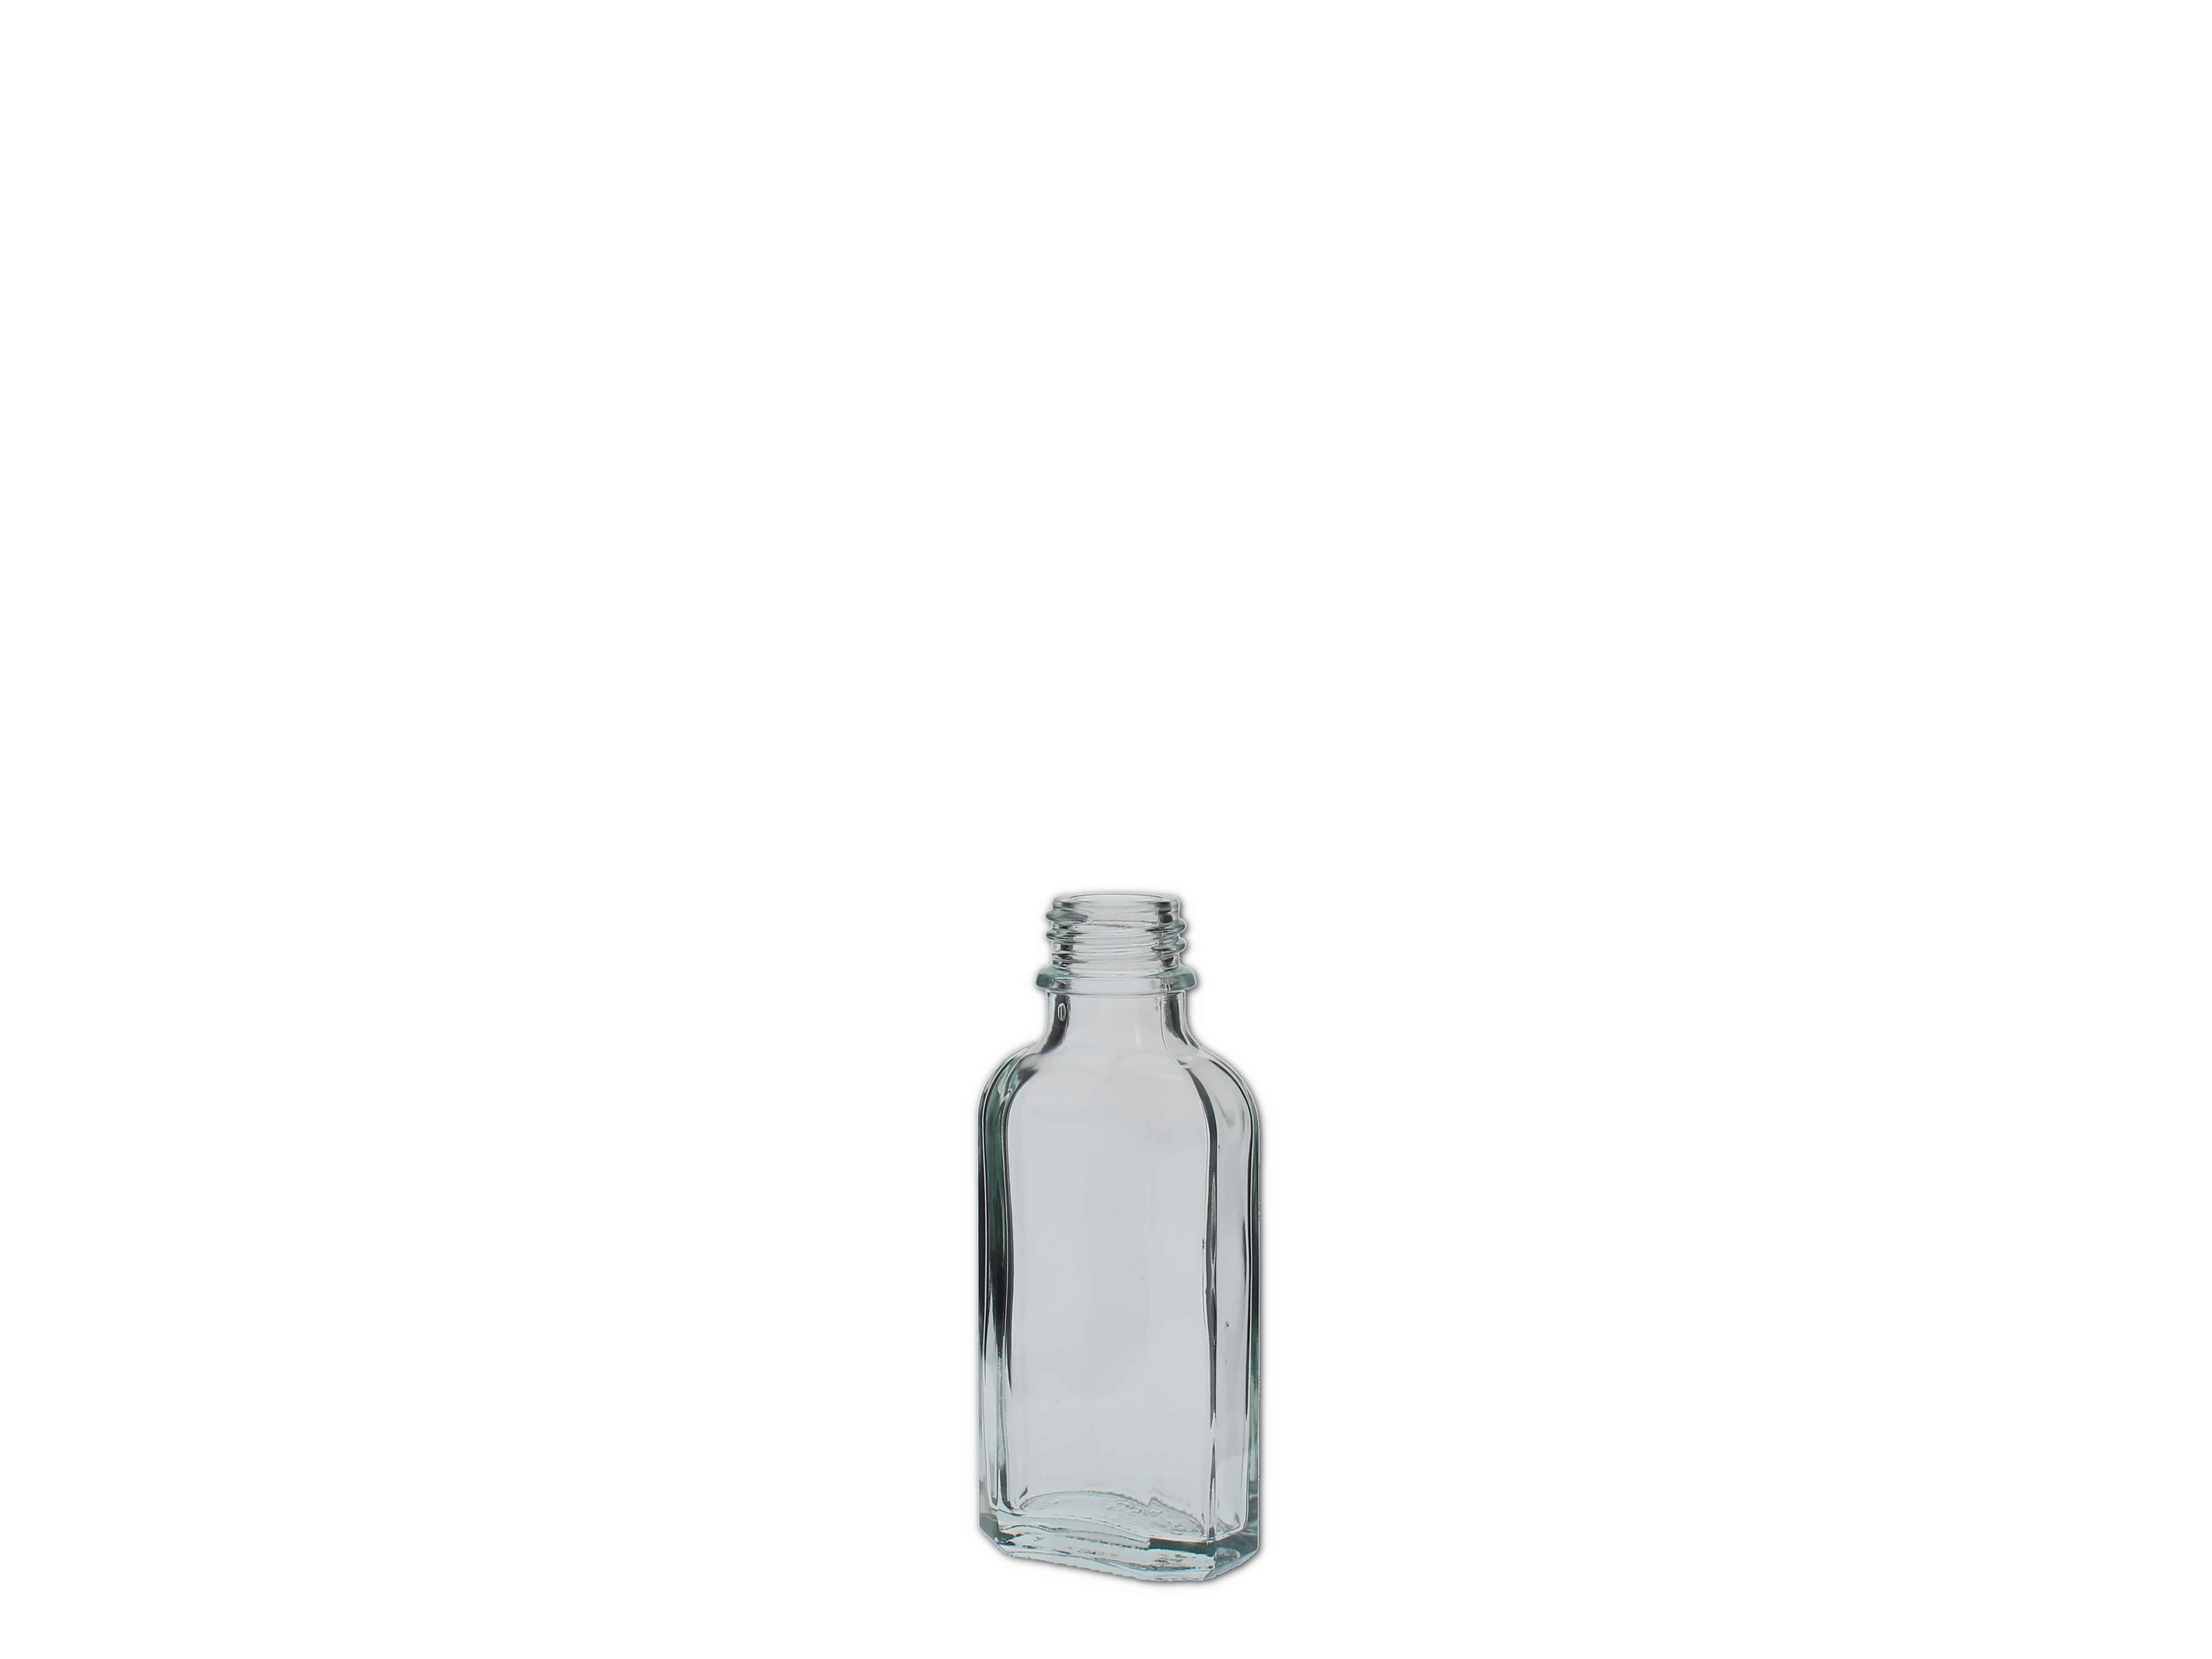    Meplatflasche weiß  50ml (DIN 22)